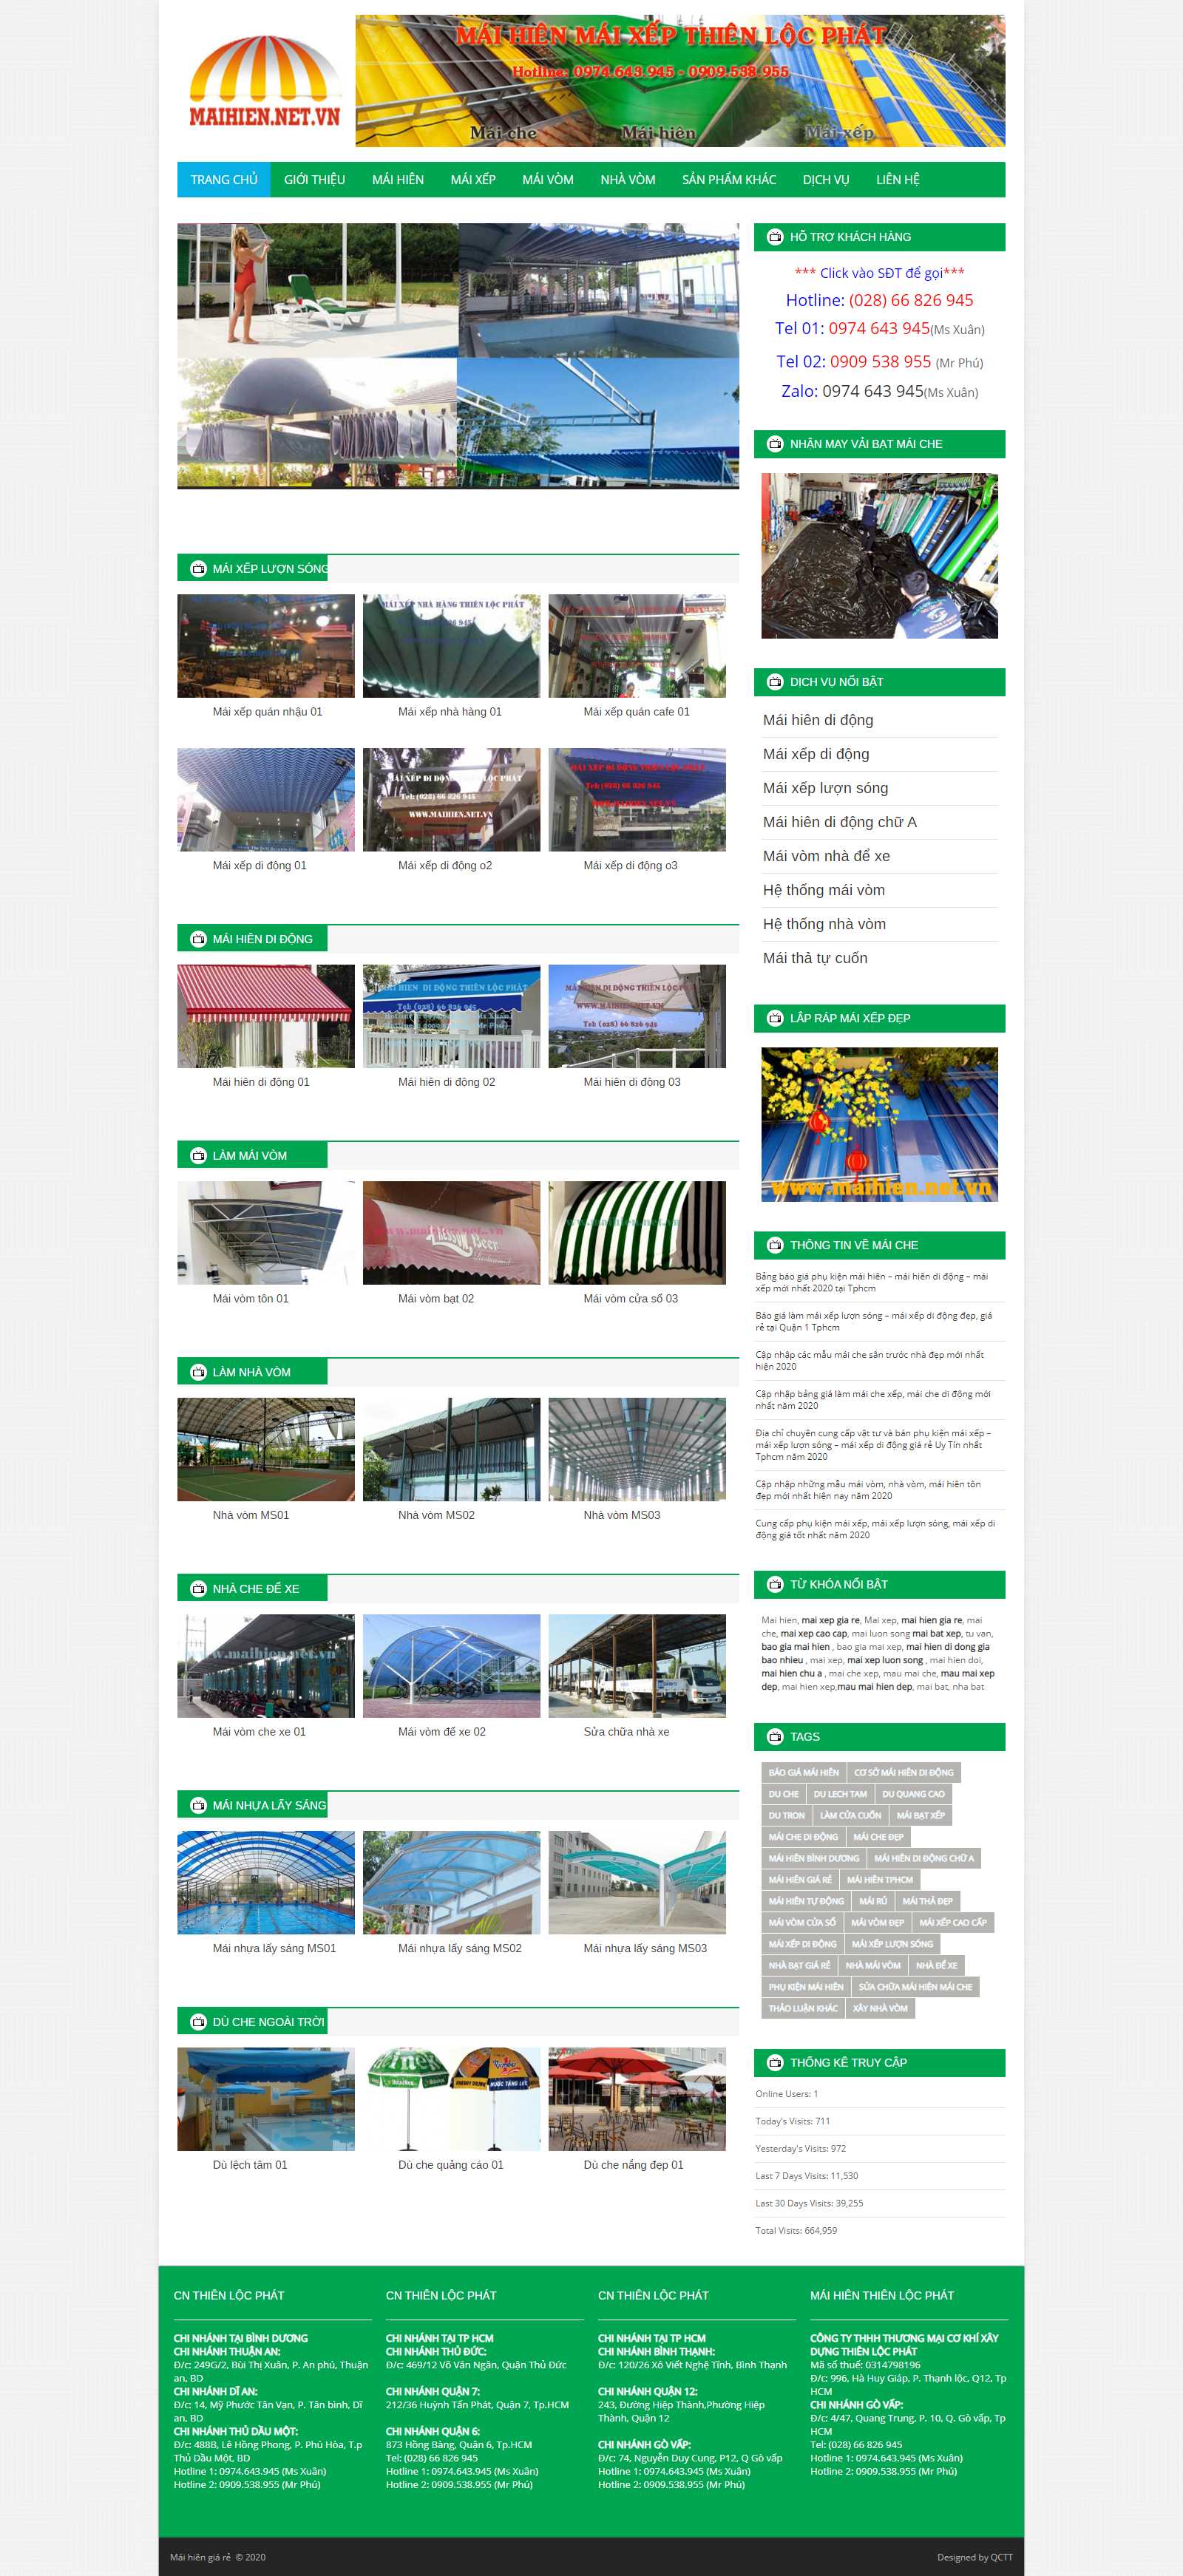 Thiết kế Website mái che di động - www.maihien.net.vn